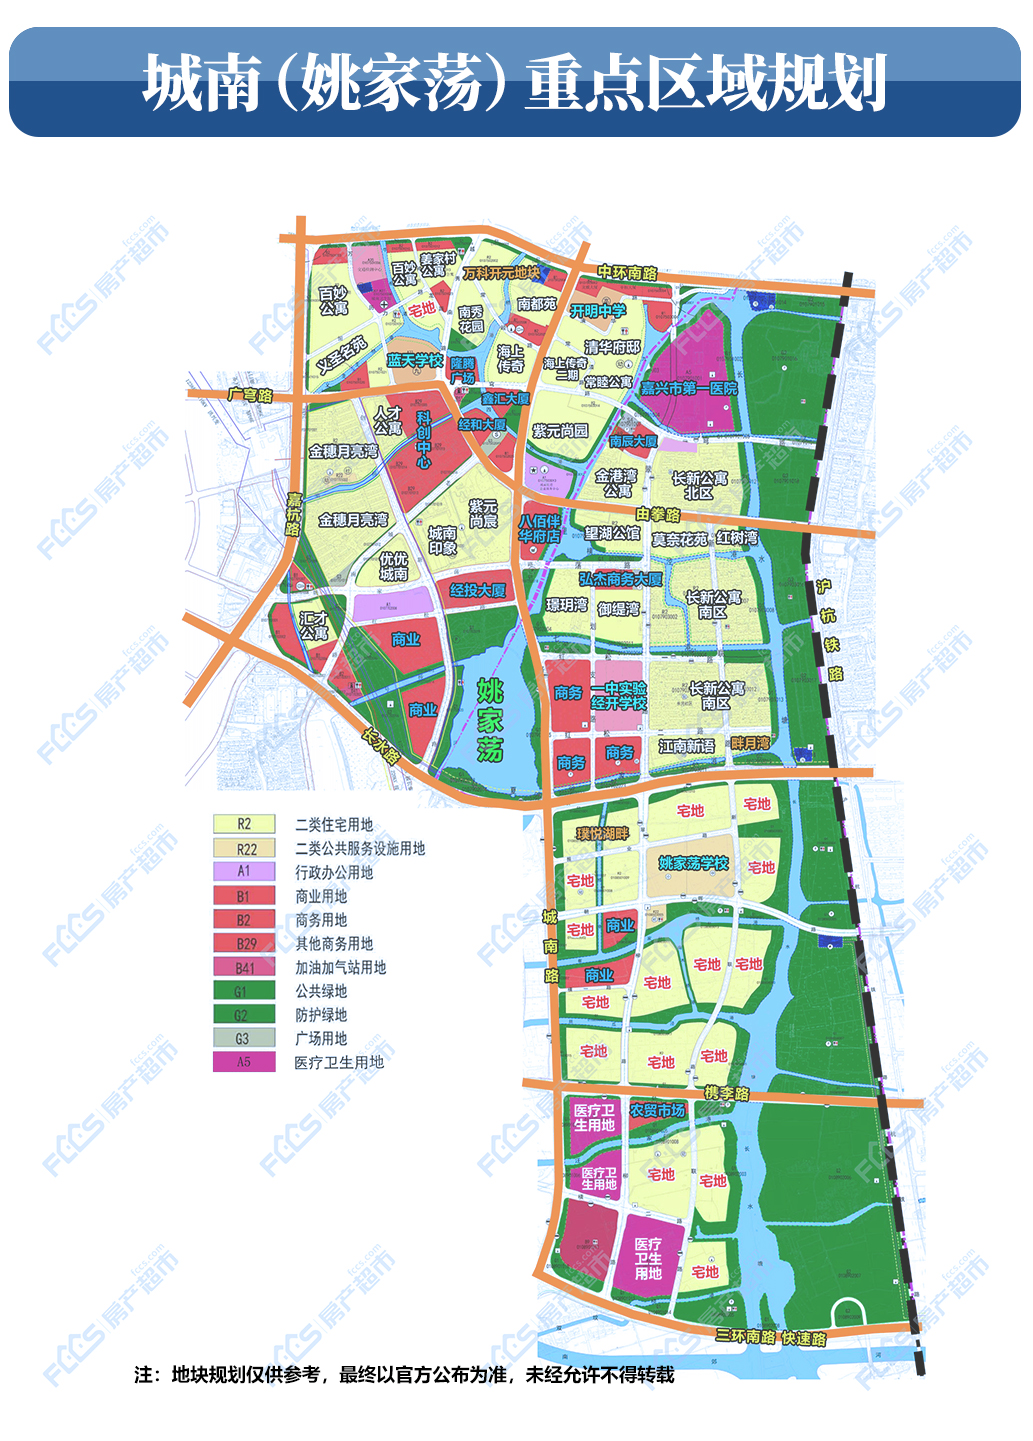 从用地规划 探城市未来 2020嘉兴各大区域规划曝光 大量宅地,商业